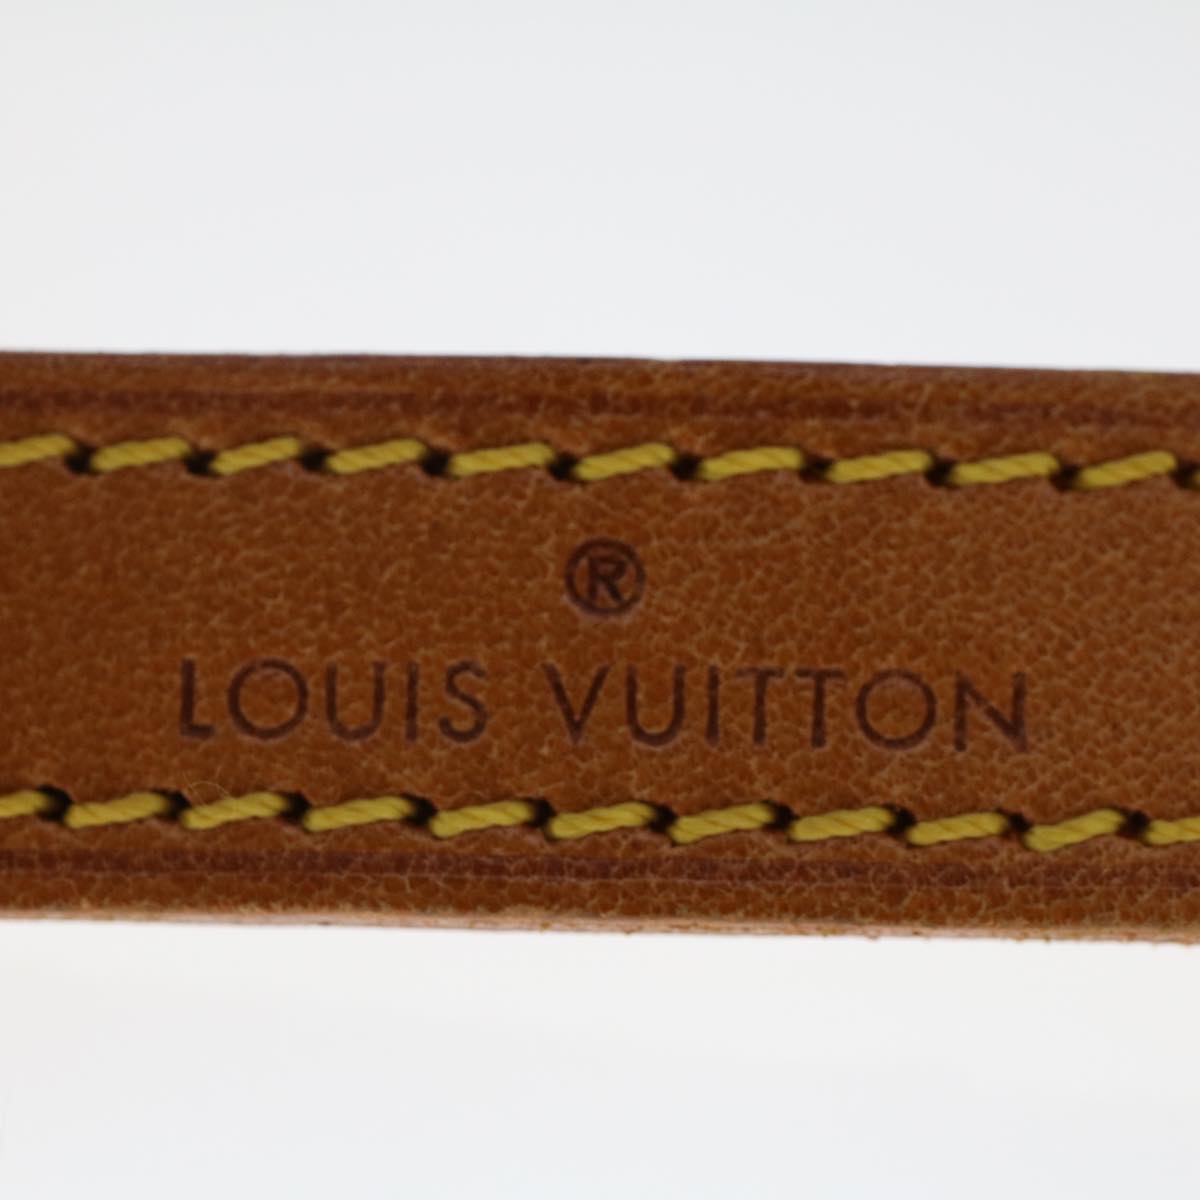 LOUIS VUITTON Shoulder Strap Leather 39.4"" Beige LV Auth 49165